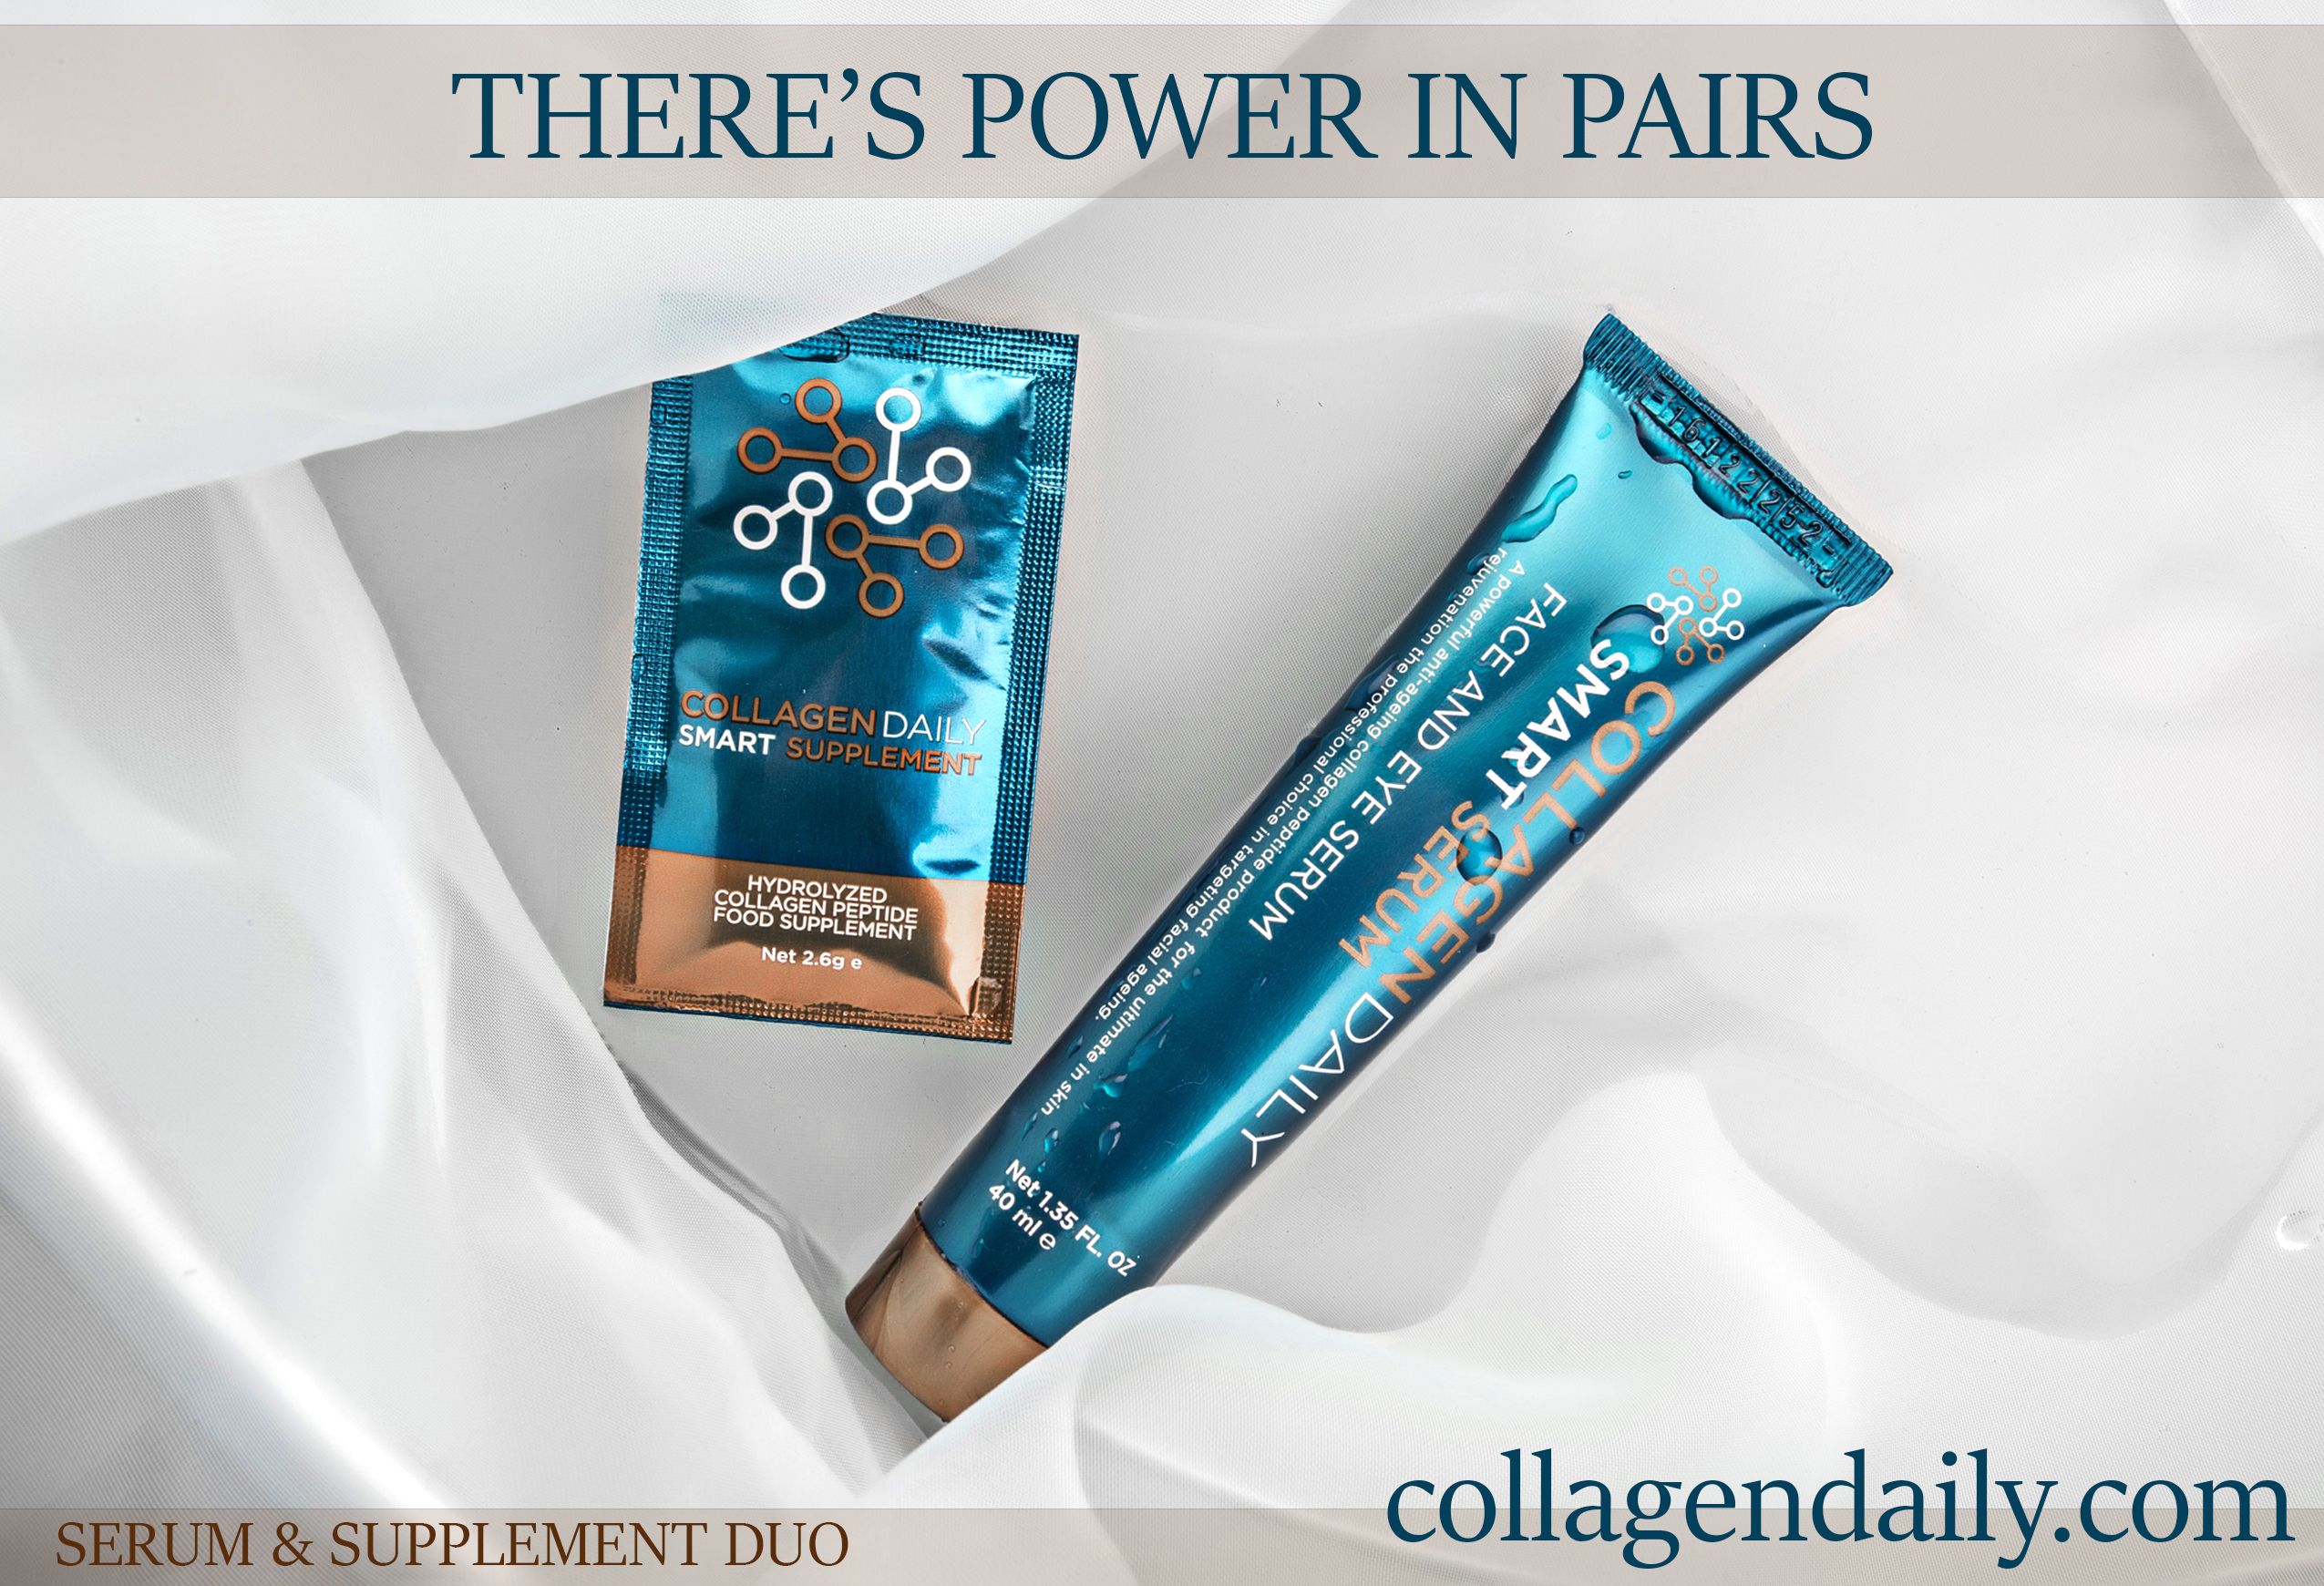 Collagen Daily Ltd